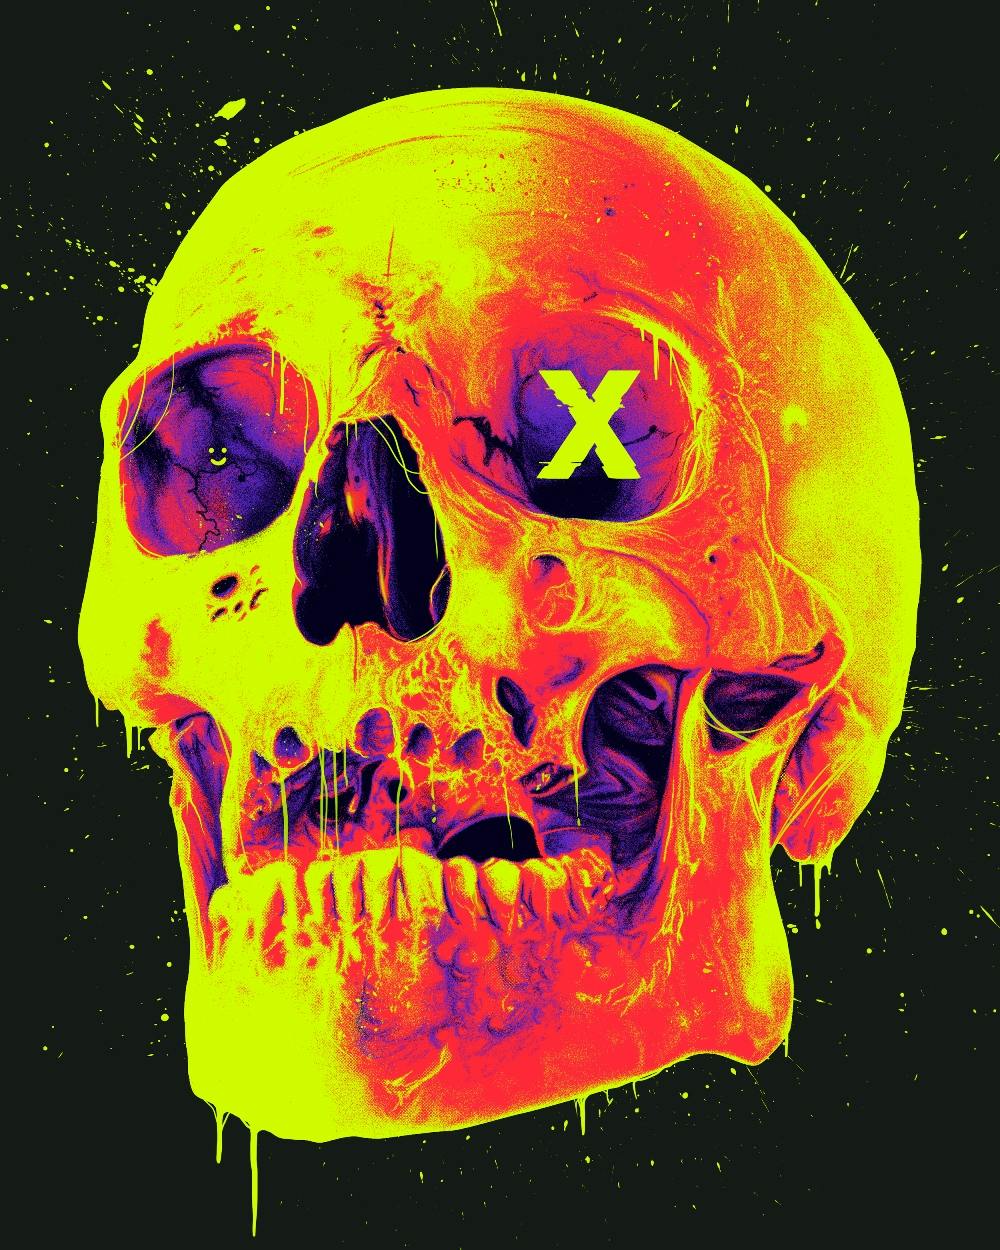 A neon skull